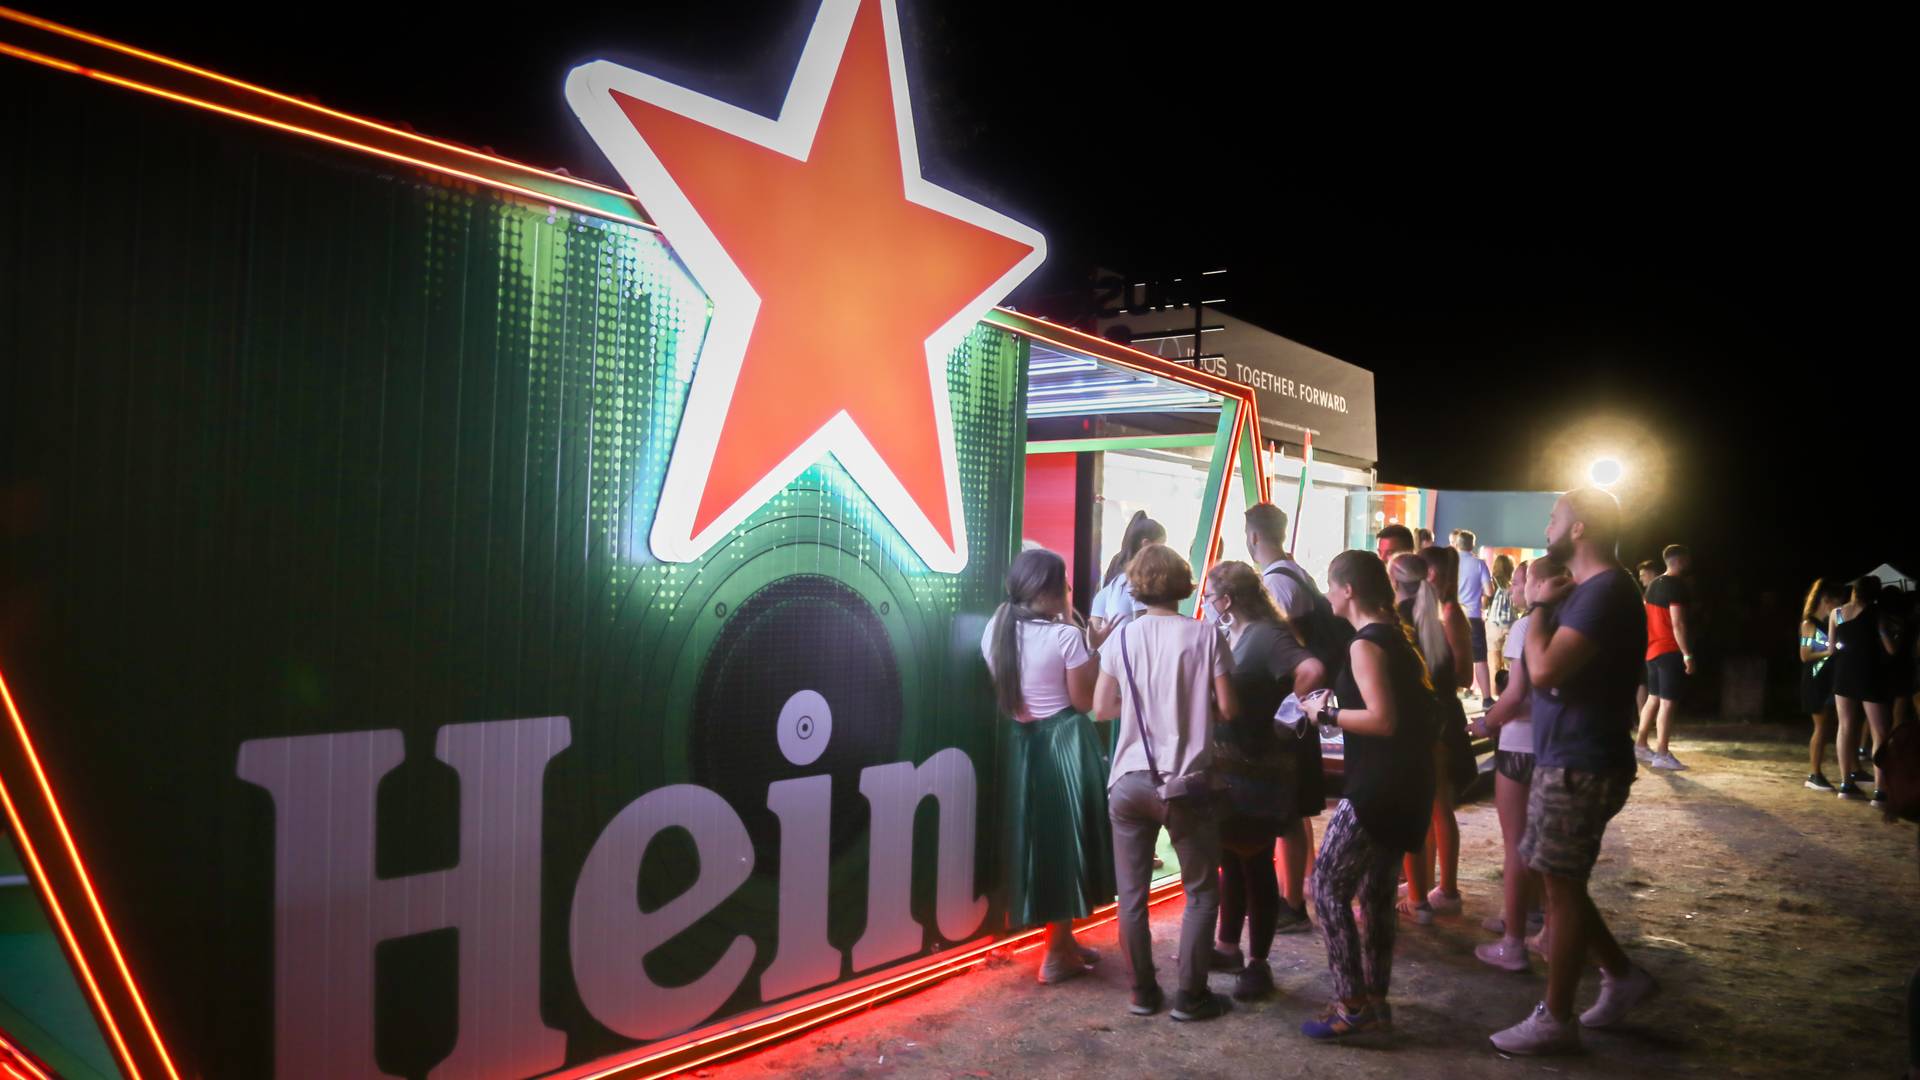 Exit i Heineken® vas pozivaju da ponovo živite svoju muziku